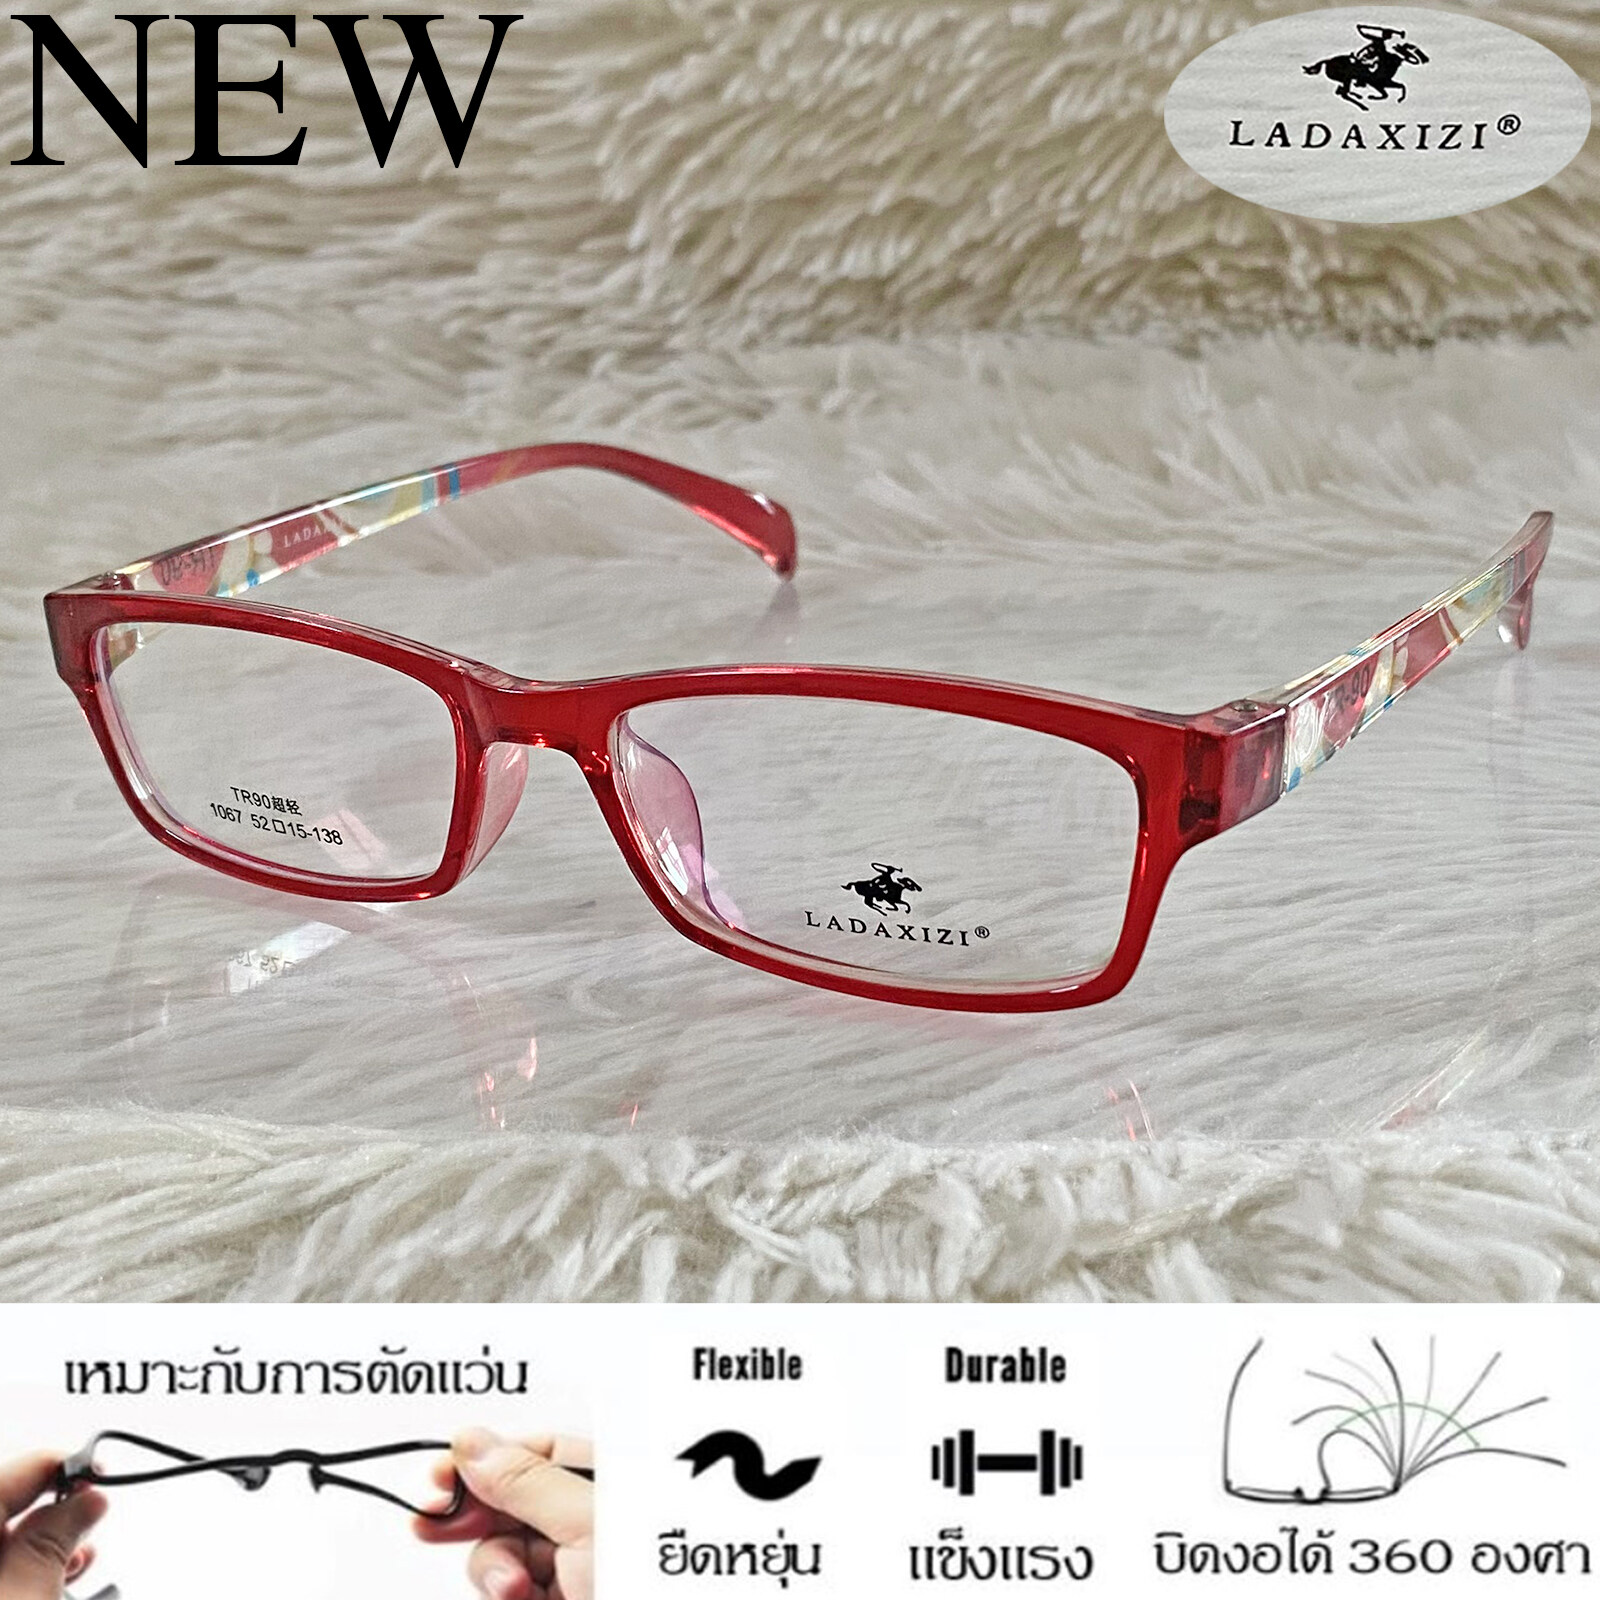 TR 90 กรอบแว่นตา สำหรับตัดเลนส์ แว่นตา Fashion ชาย-หญิง รุ่น LADAXIZI 10677 สีแดง กรอบเต็ม ทรงเหลี่ยม ขาข้อต่อ ทนความร้อนสูง รับตัดเลนส์ ทุกชนิด